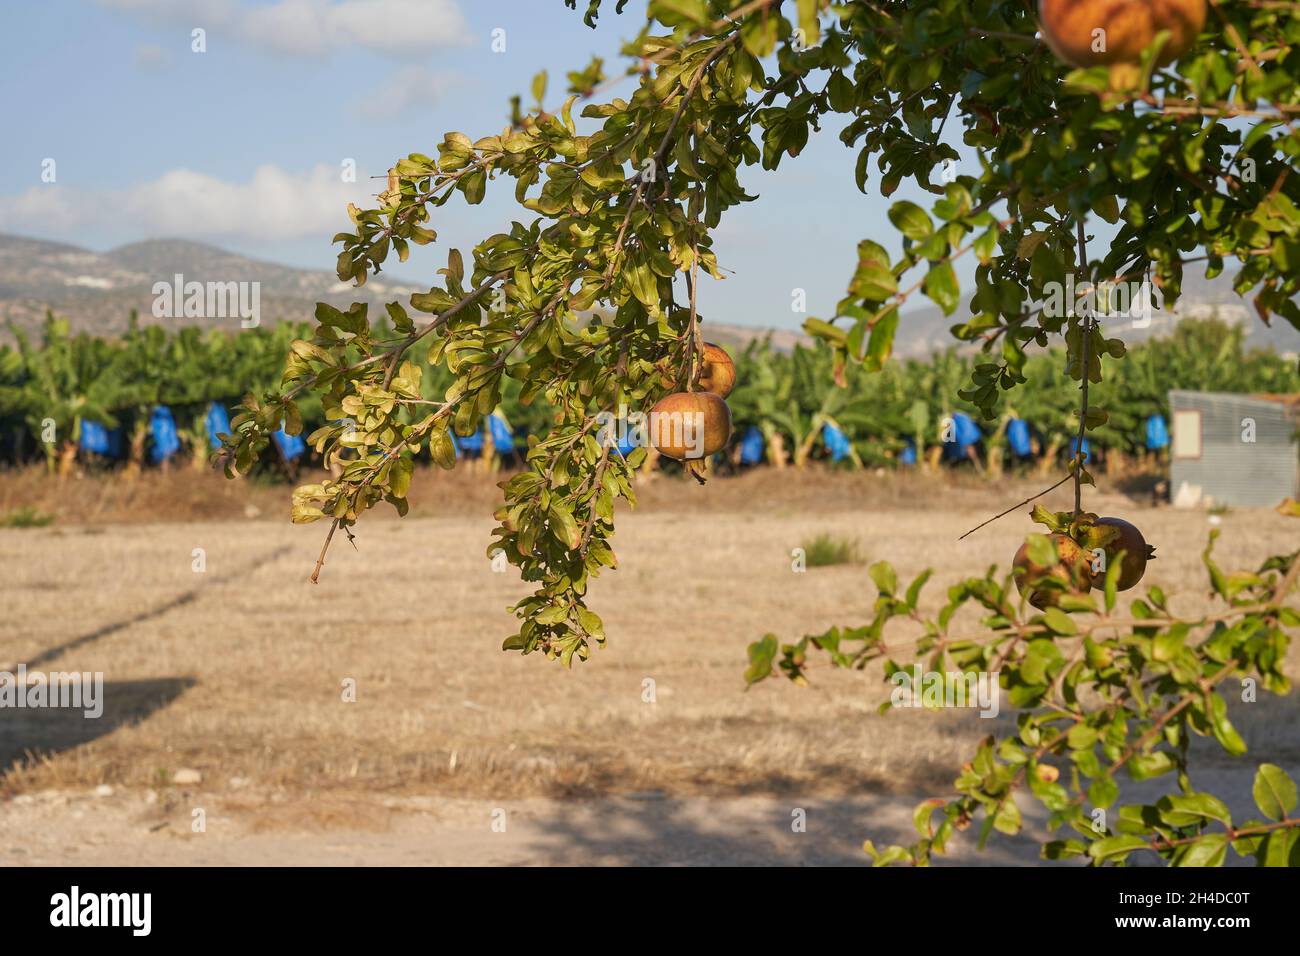 Foto von Granatapfelfrüchten, die am Ast des Baumes hängen, mit Bananenplantage und blauem Himmel, der im Hintergrund nicht fokussiert ist Stockfoto